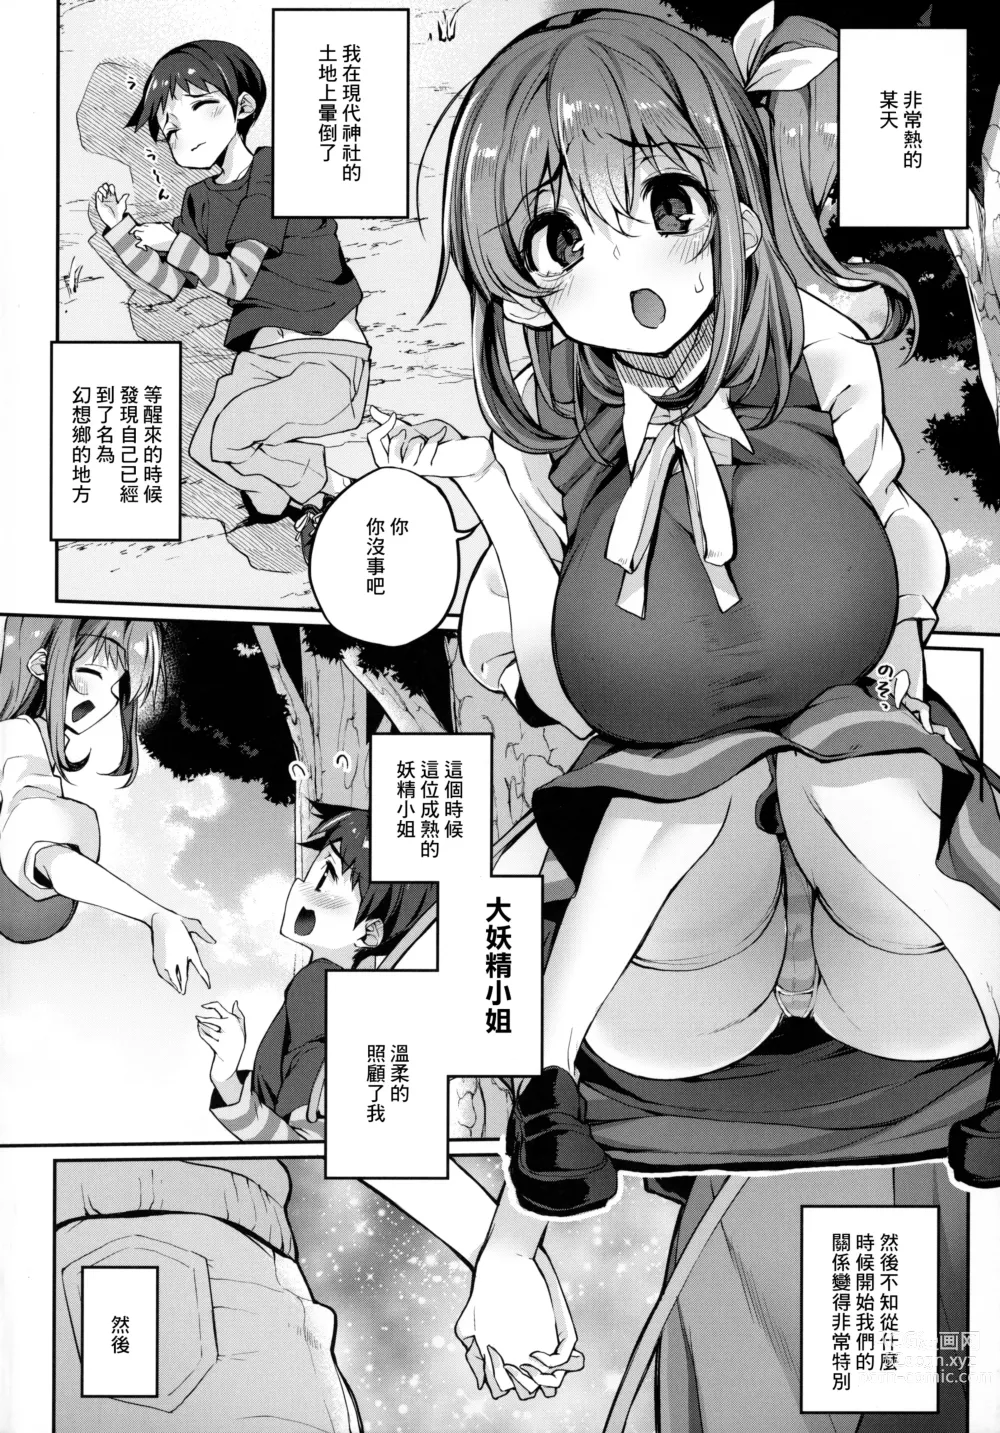 Page 3 of doujinshi Kimi o Kattemo Iidesuka?